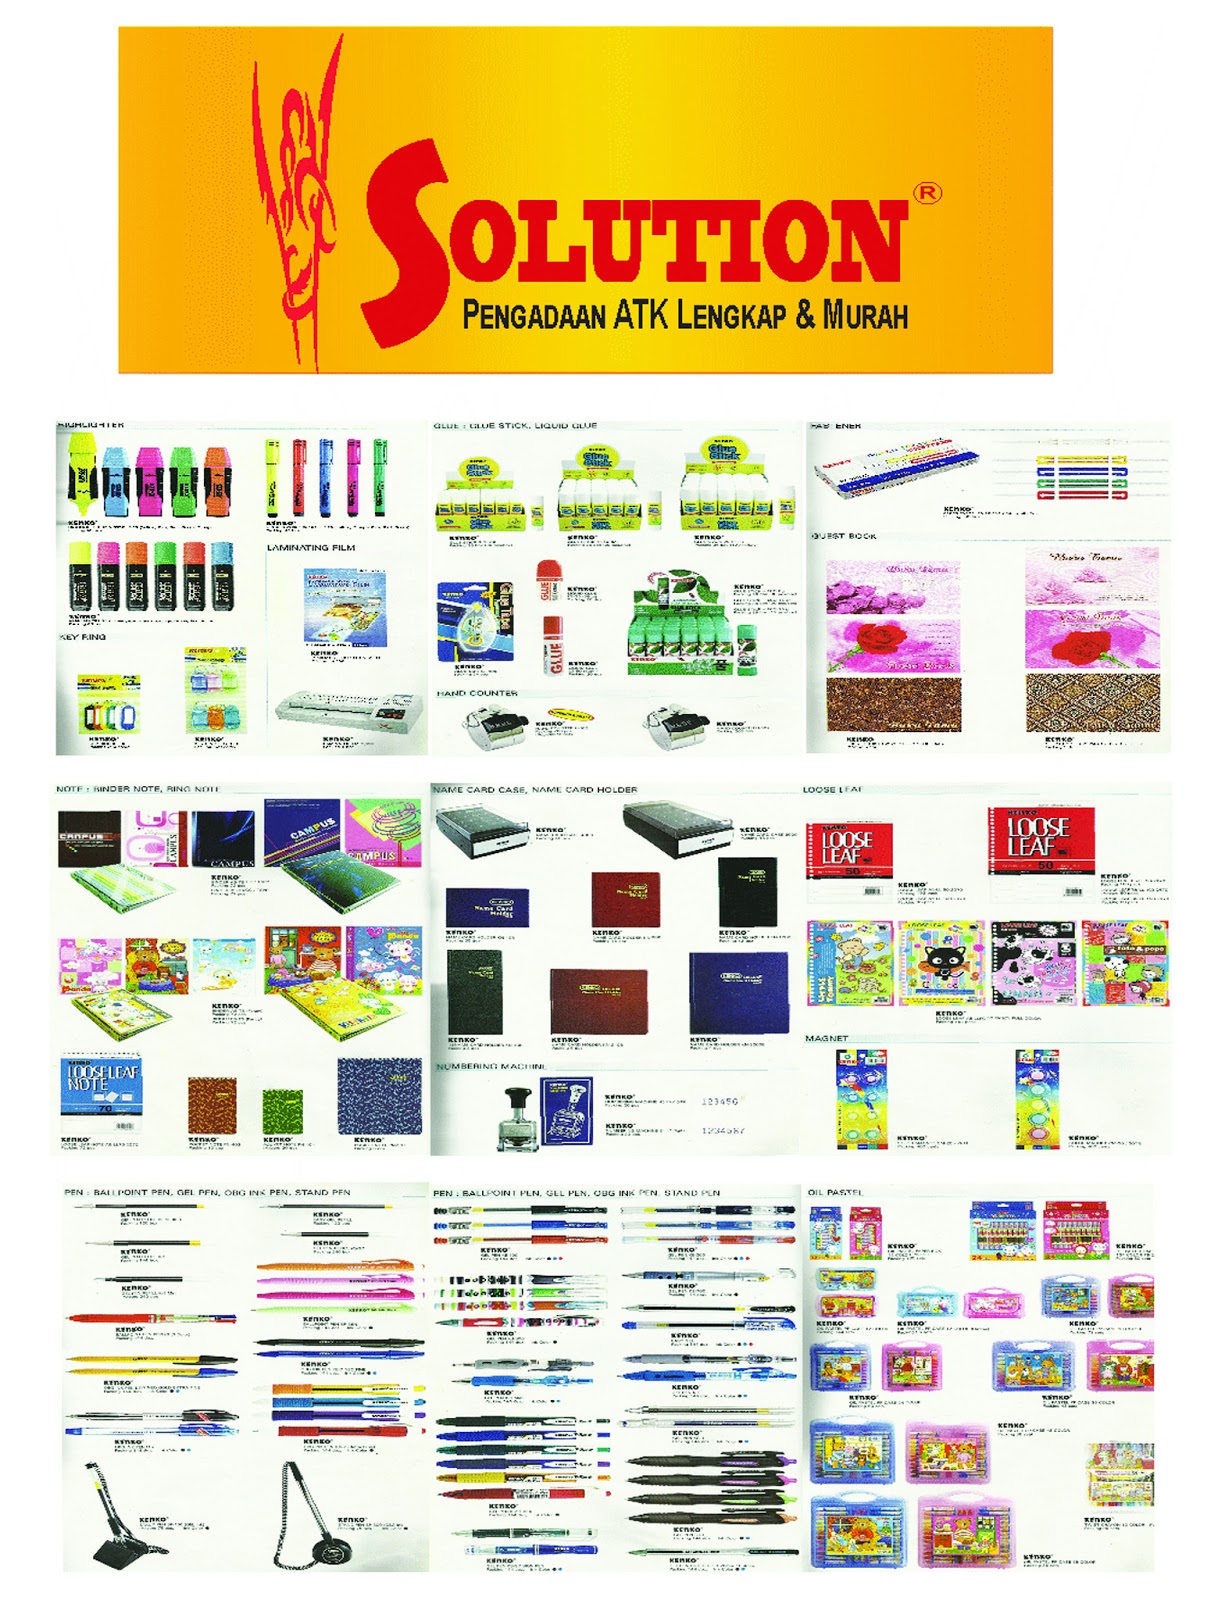 Atk Katalog solusion: Brosur ATK